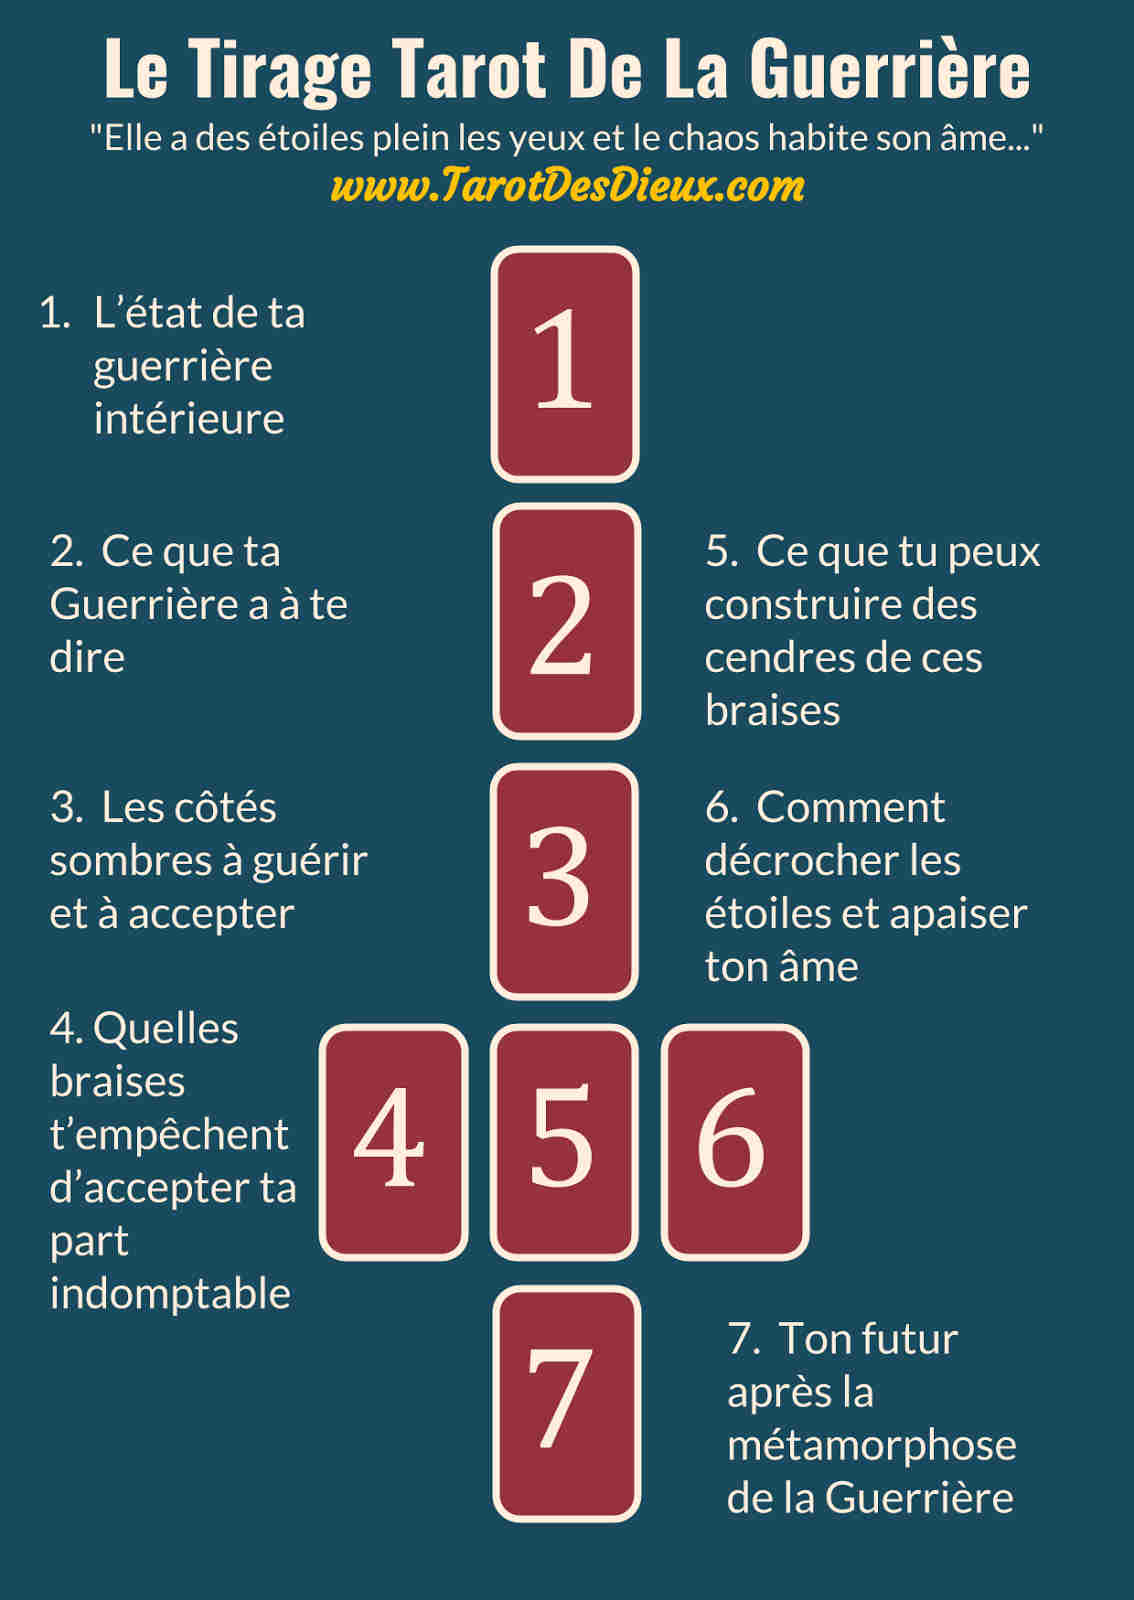 Cliquez pour lire la page sur Le Tirage Tarot De La Guerrière - Infographic